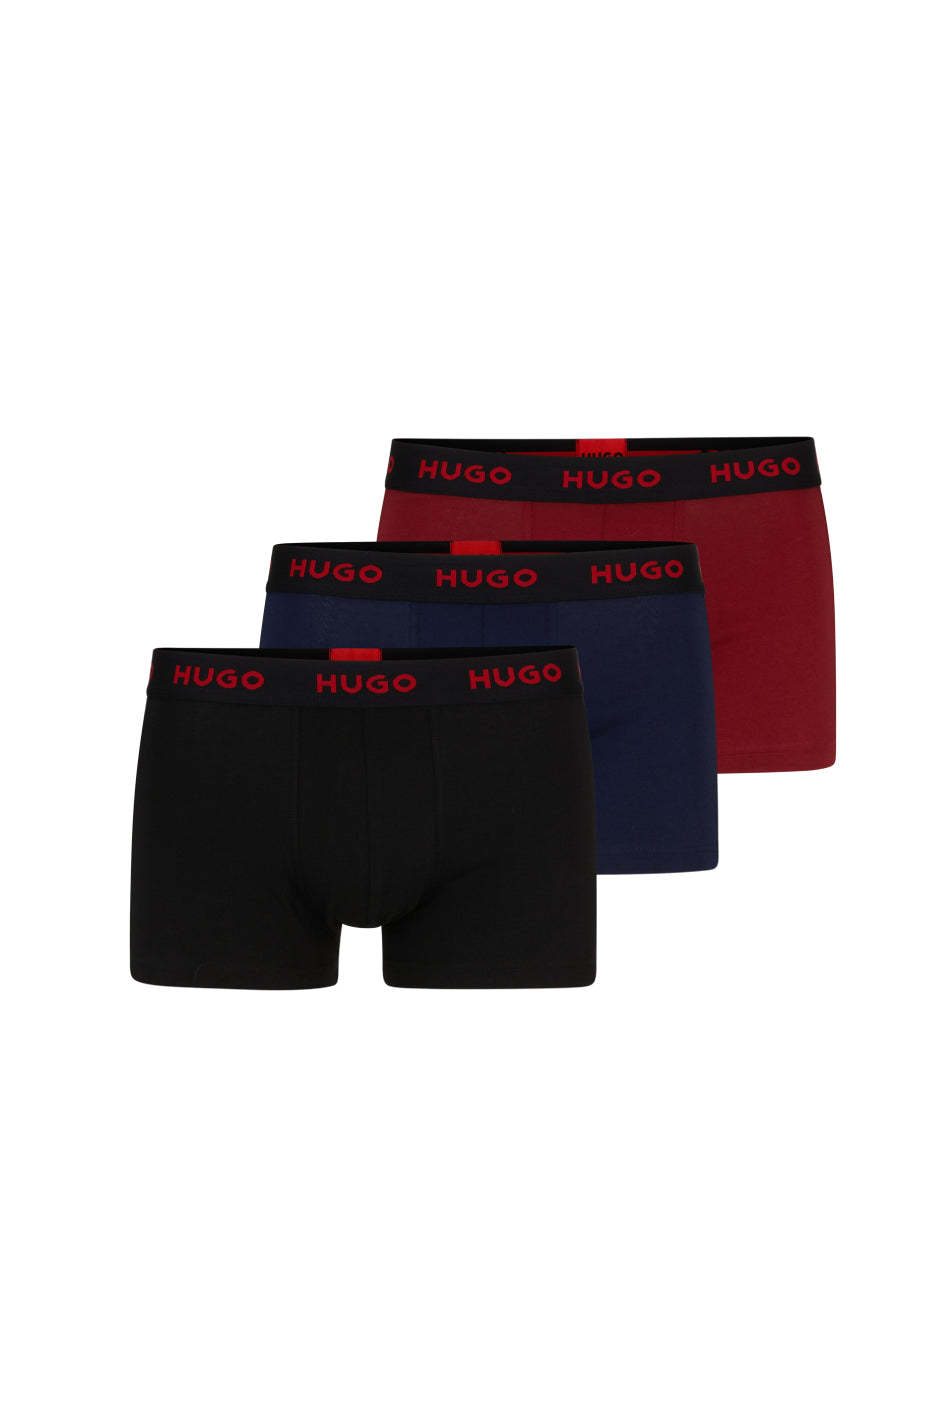 HUGO 3 Pack Men's Trunk